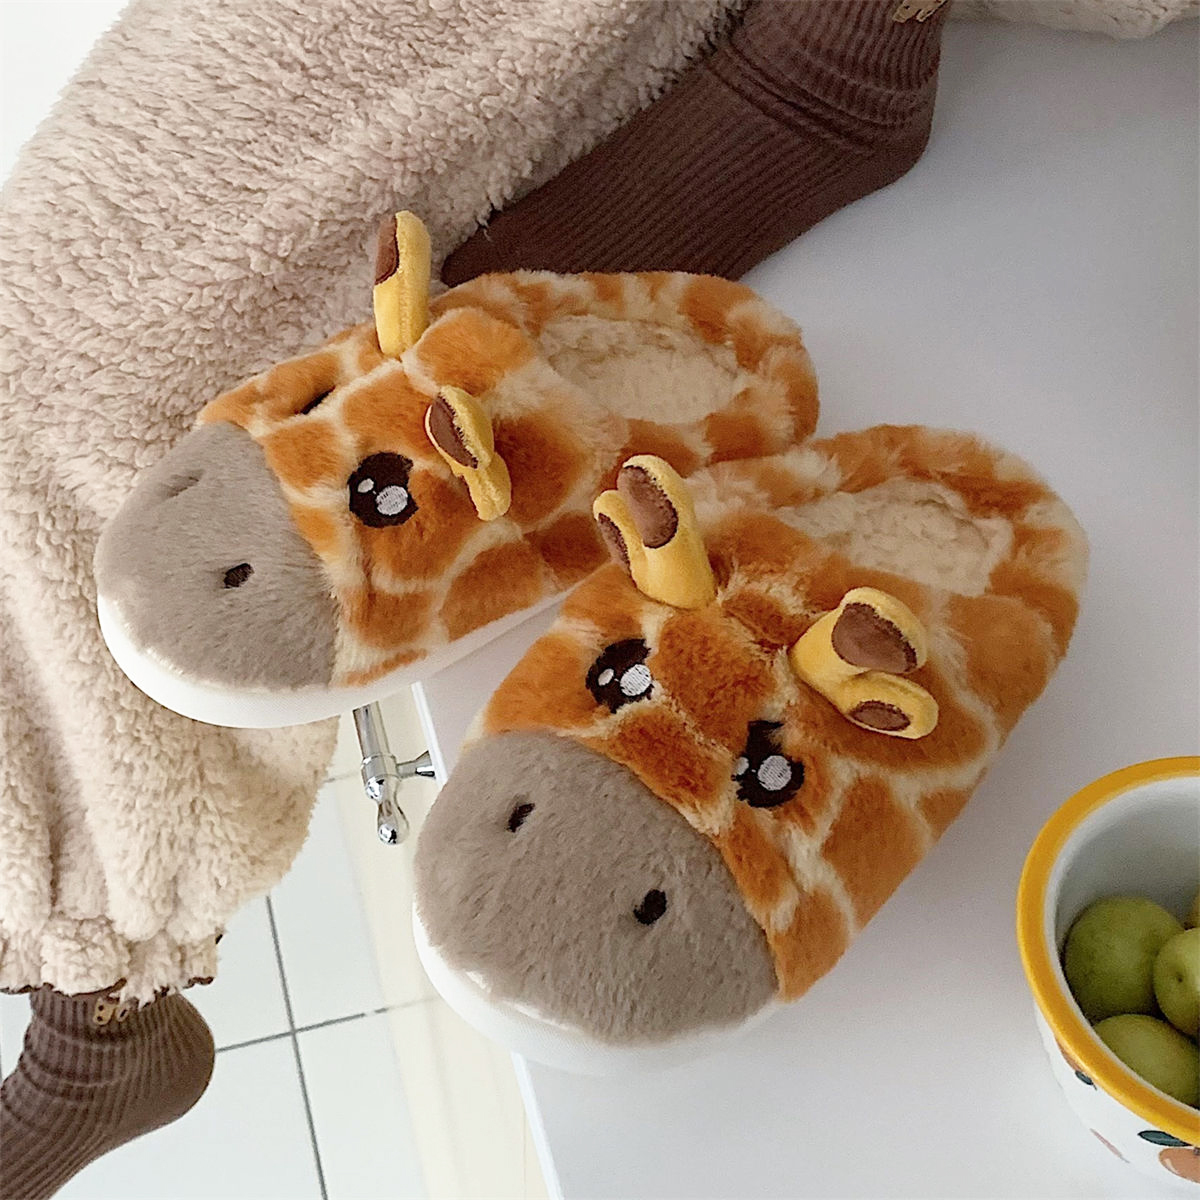 Slippers Fluffy Cartoon Giraffe Animal Slippers Antiskid Soft Plush Flats Home Shoes Plush Giraffe Slipper